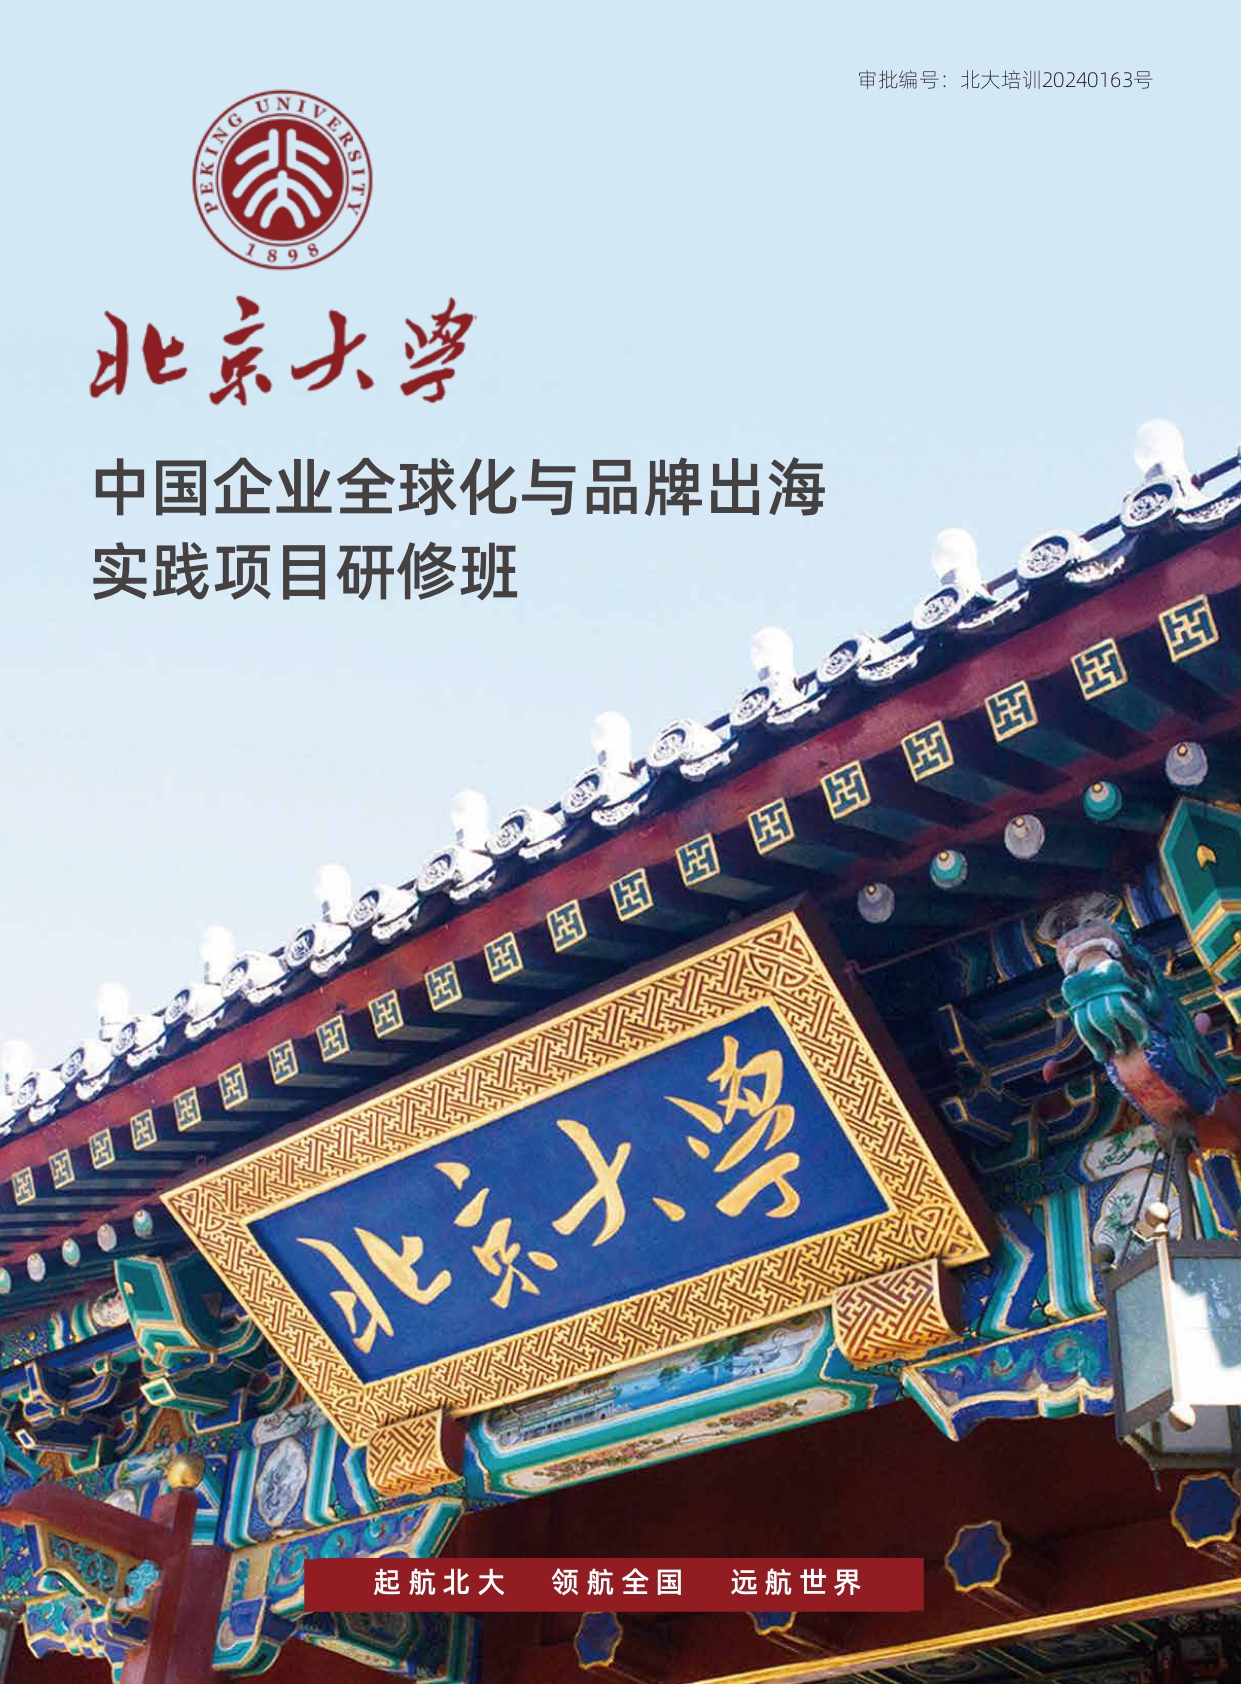 北京大学中国企业全球化与品牌出海实践项目研修班(1)_page-0001.jpg